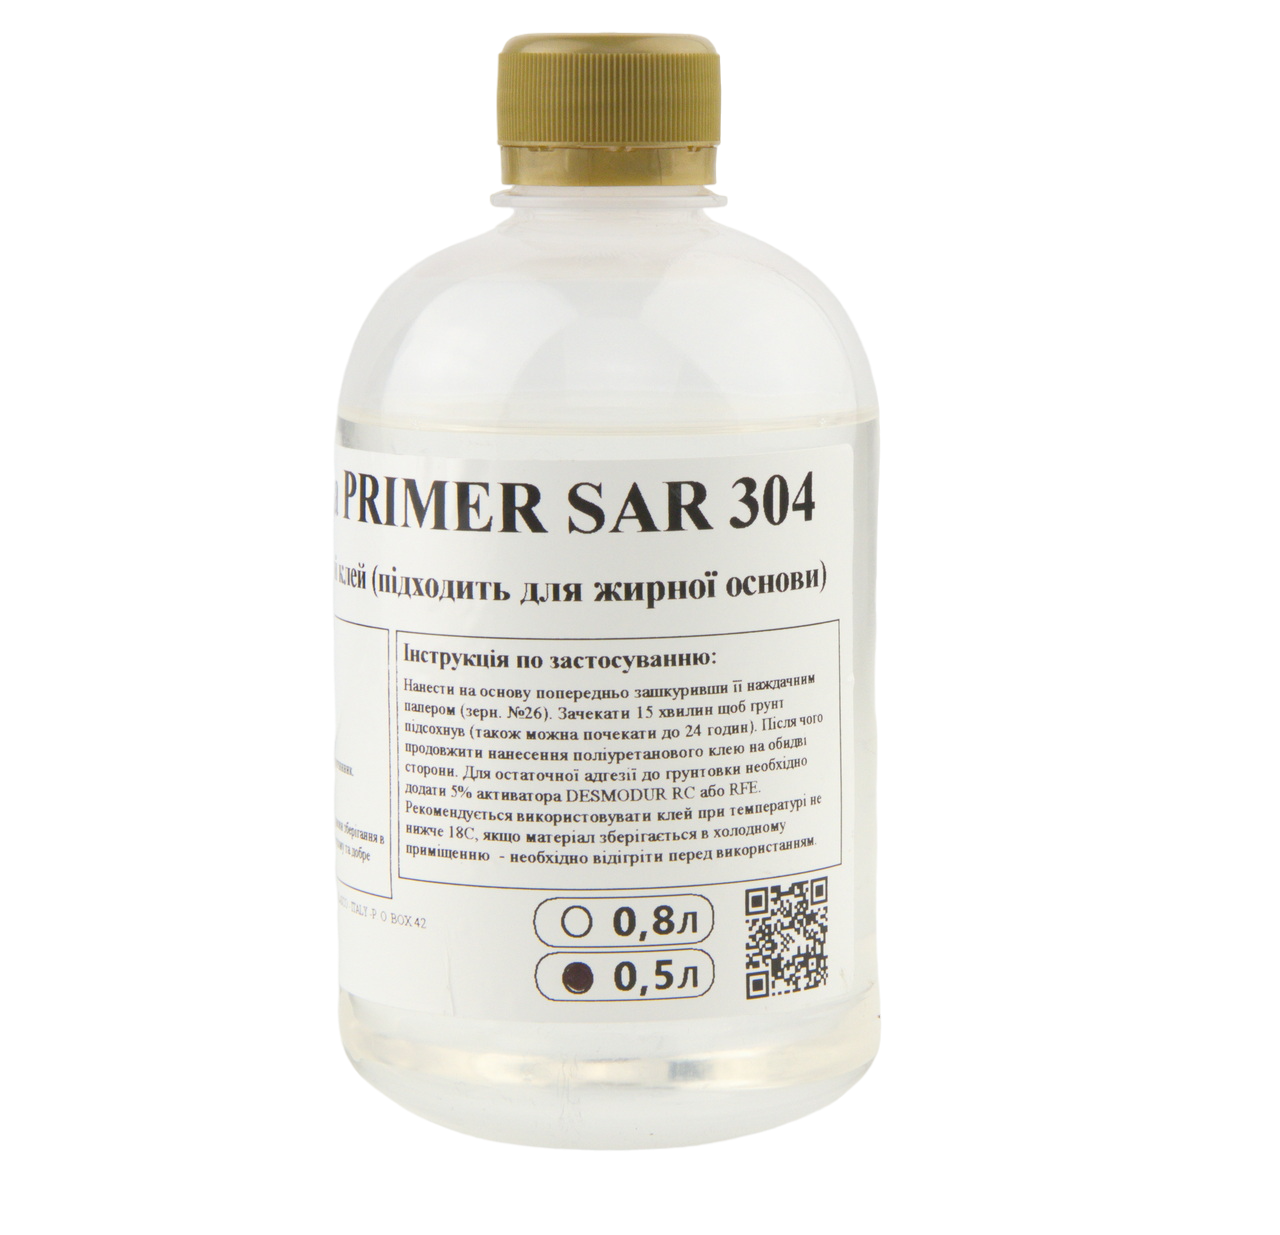 Ґрунтовка PRIMER SAR 304 під поліуретановий клей (підходить для жирної основи) анонс фото